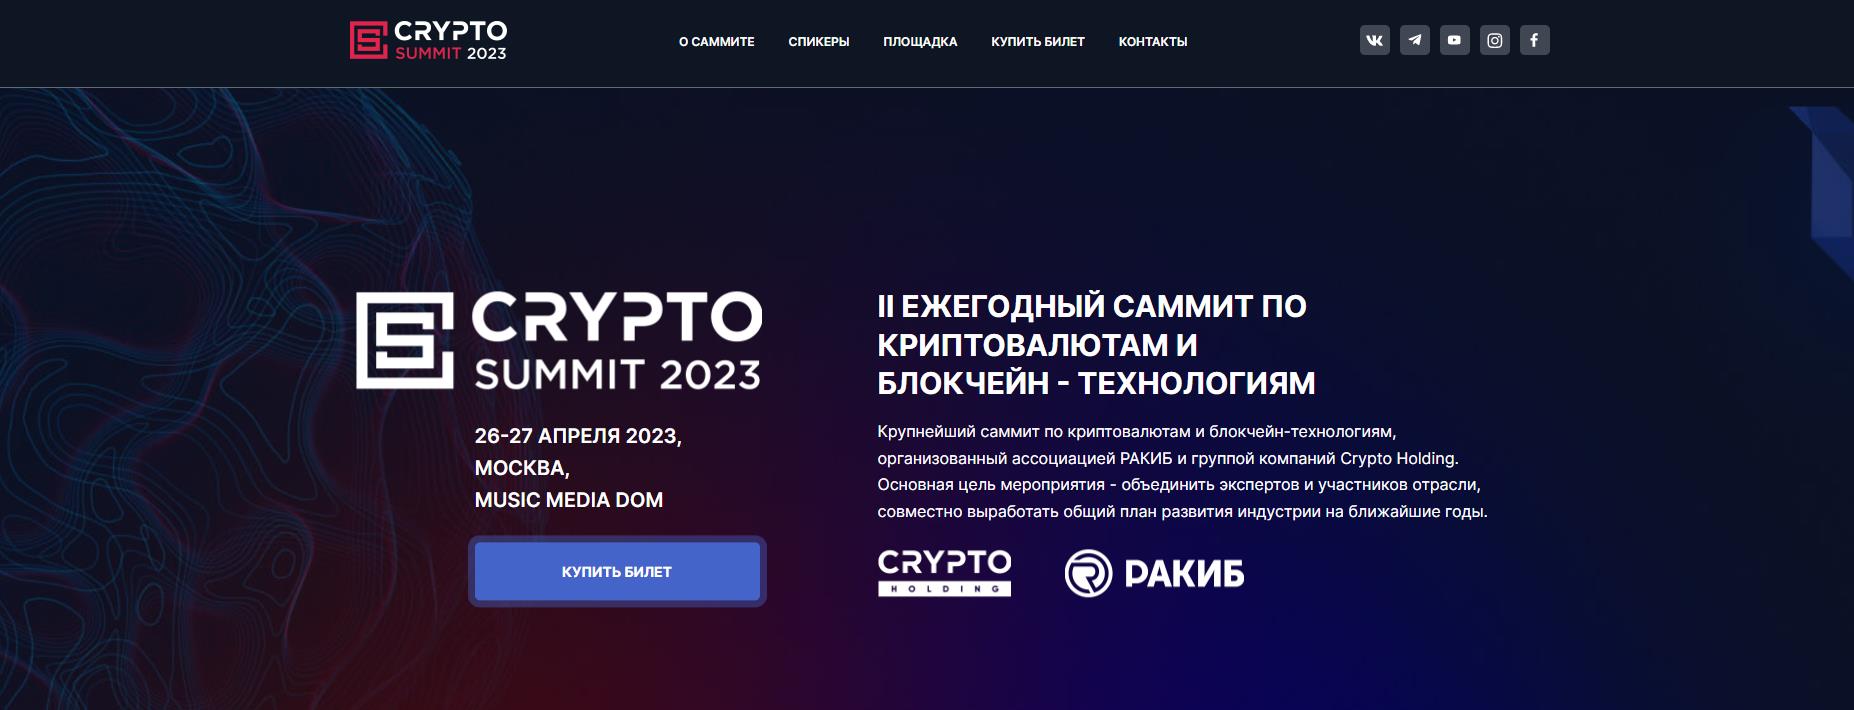 Convite CRYPTO SUMMIT 2023/MOSCOVO/26-27 DE ABRIL